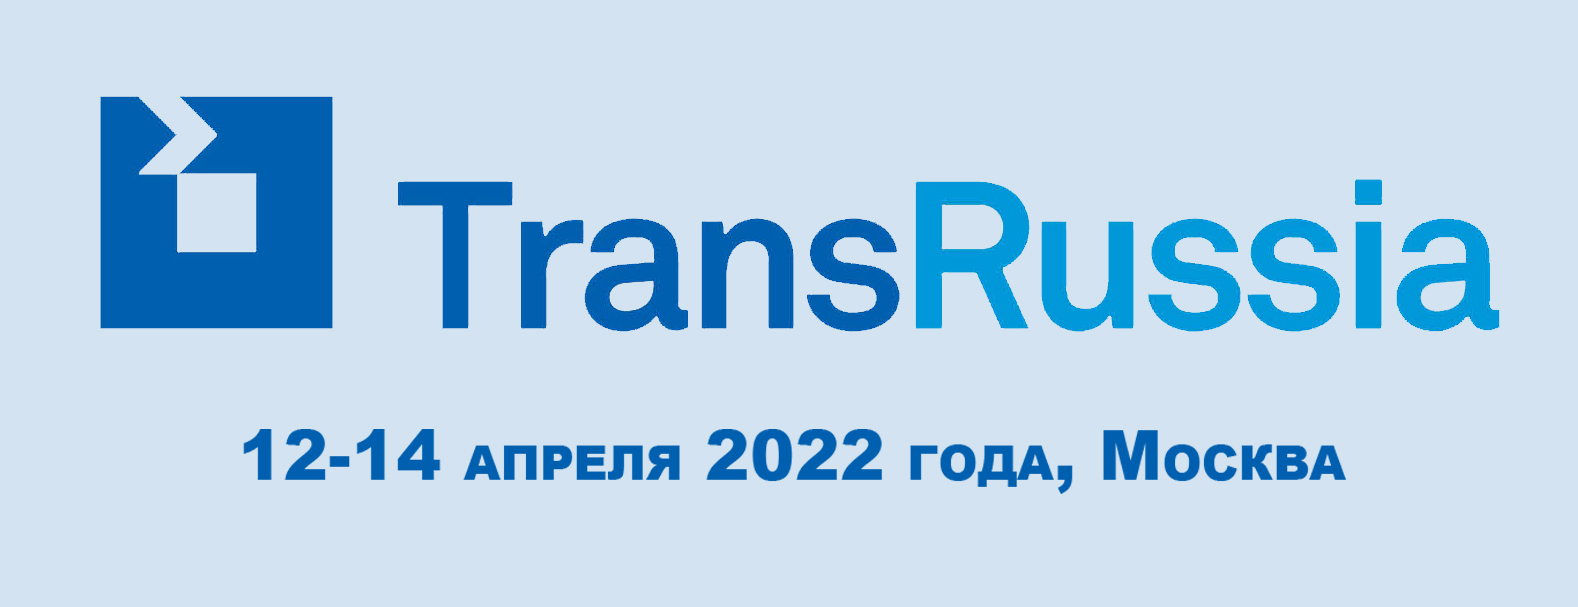 «Панди Транс» и ТТ Клуб – участники 26-ой Международной выставки TransRussia